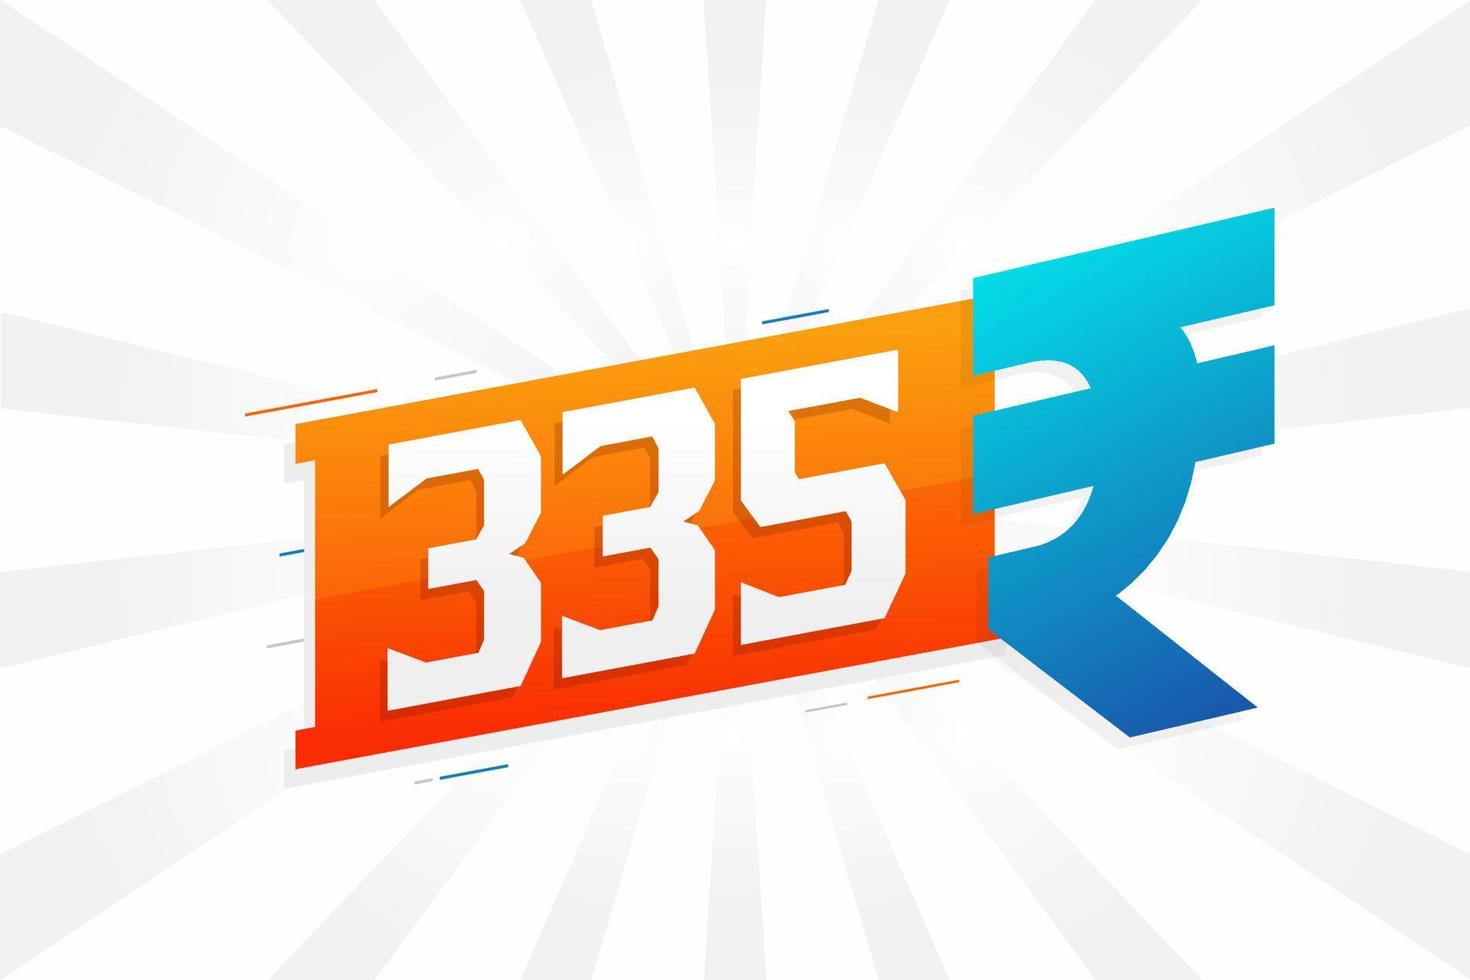 Imagem de vetor de texto em negrito símbolo de 335 rupias. ilustração vetorial de sinal de moeda de 335 rupias indianas